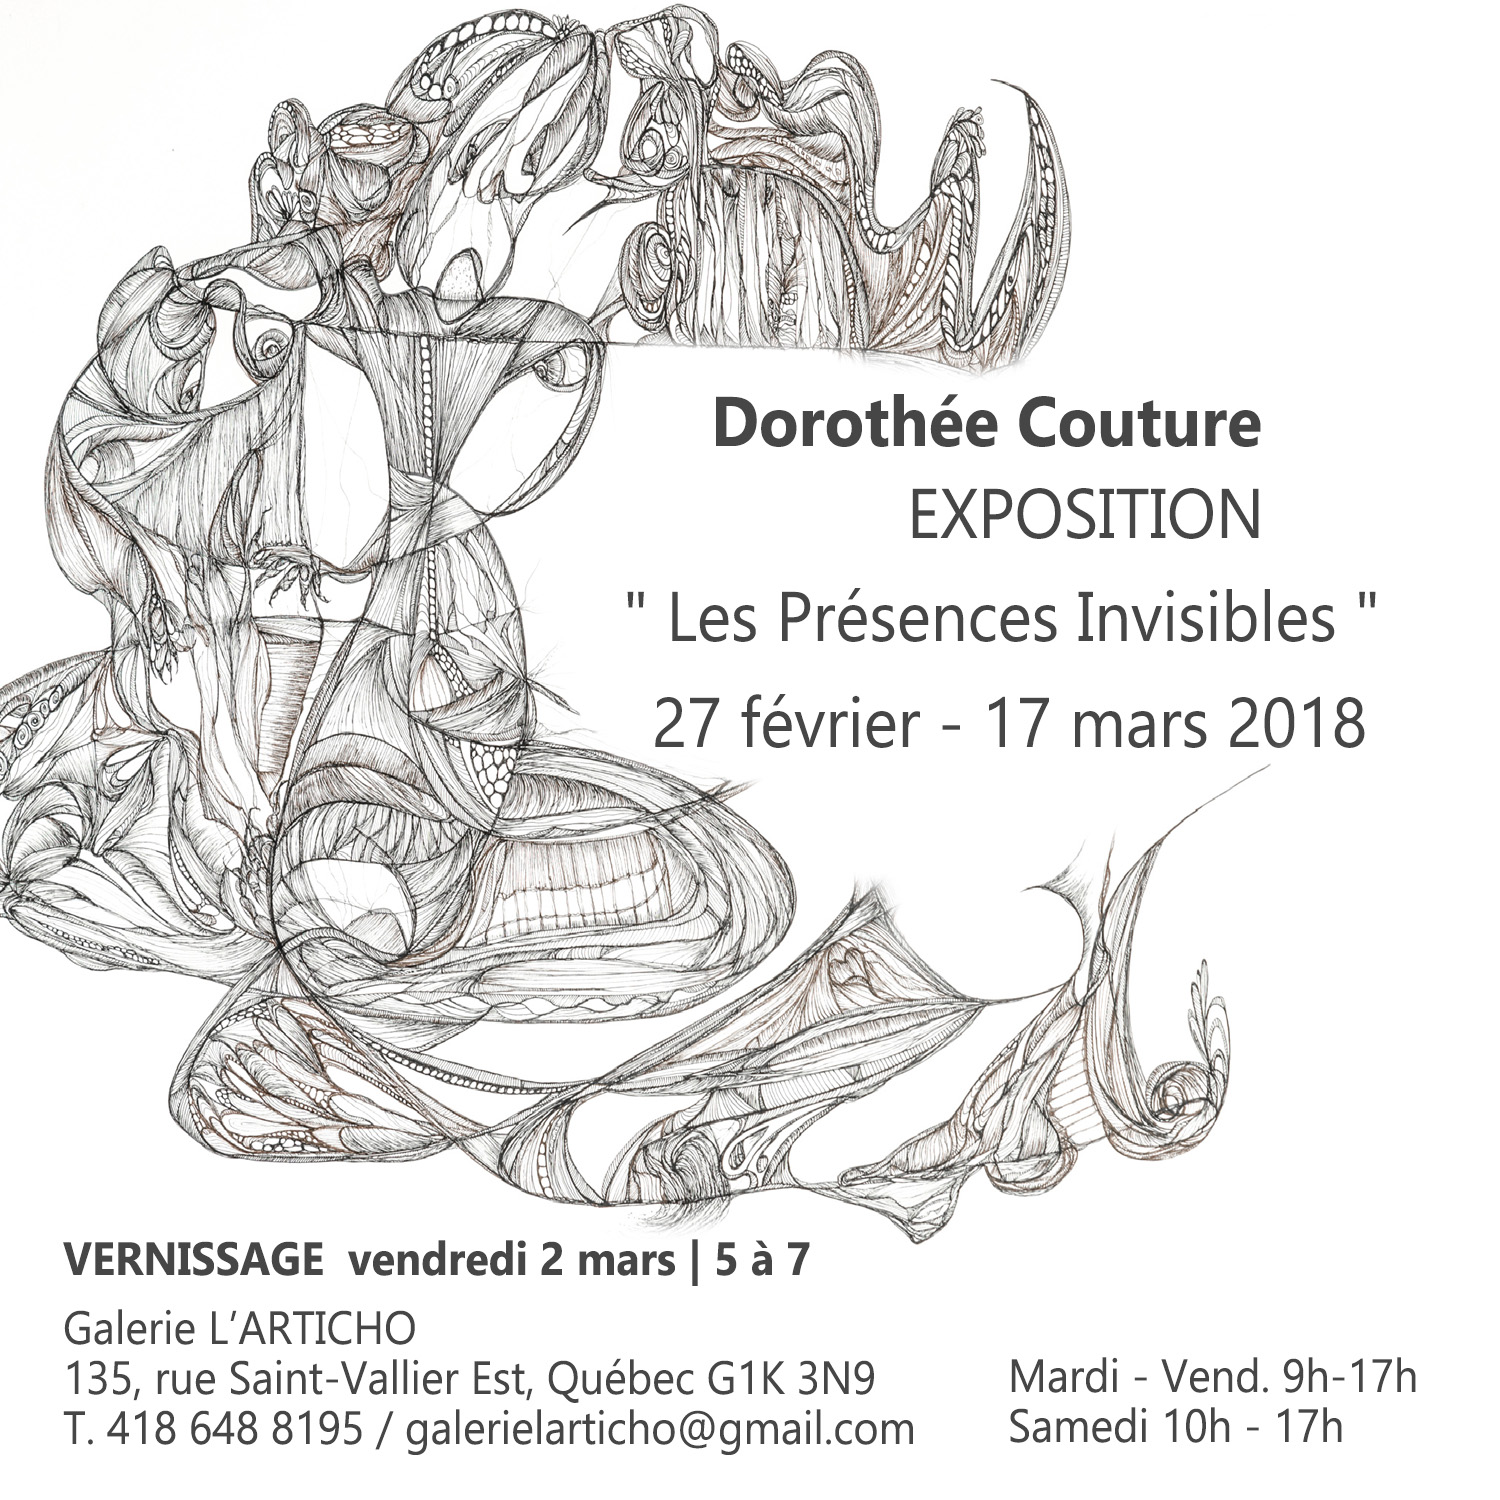 Exposition Dorothée Couture / Les Présences Invisibles